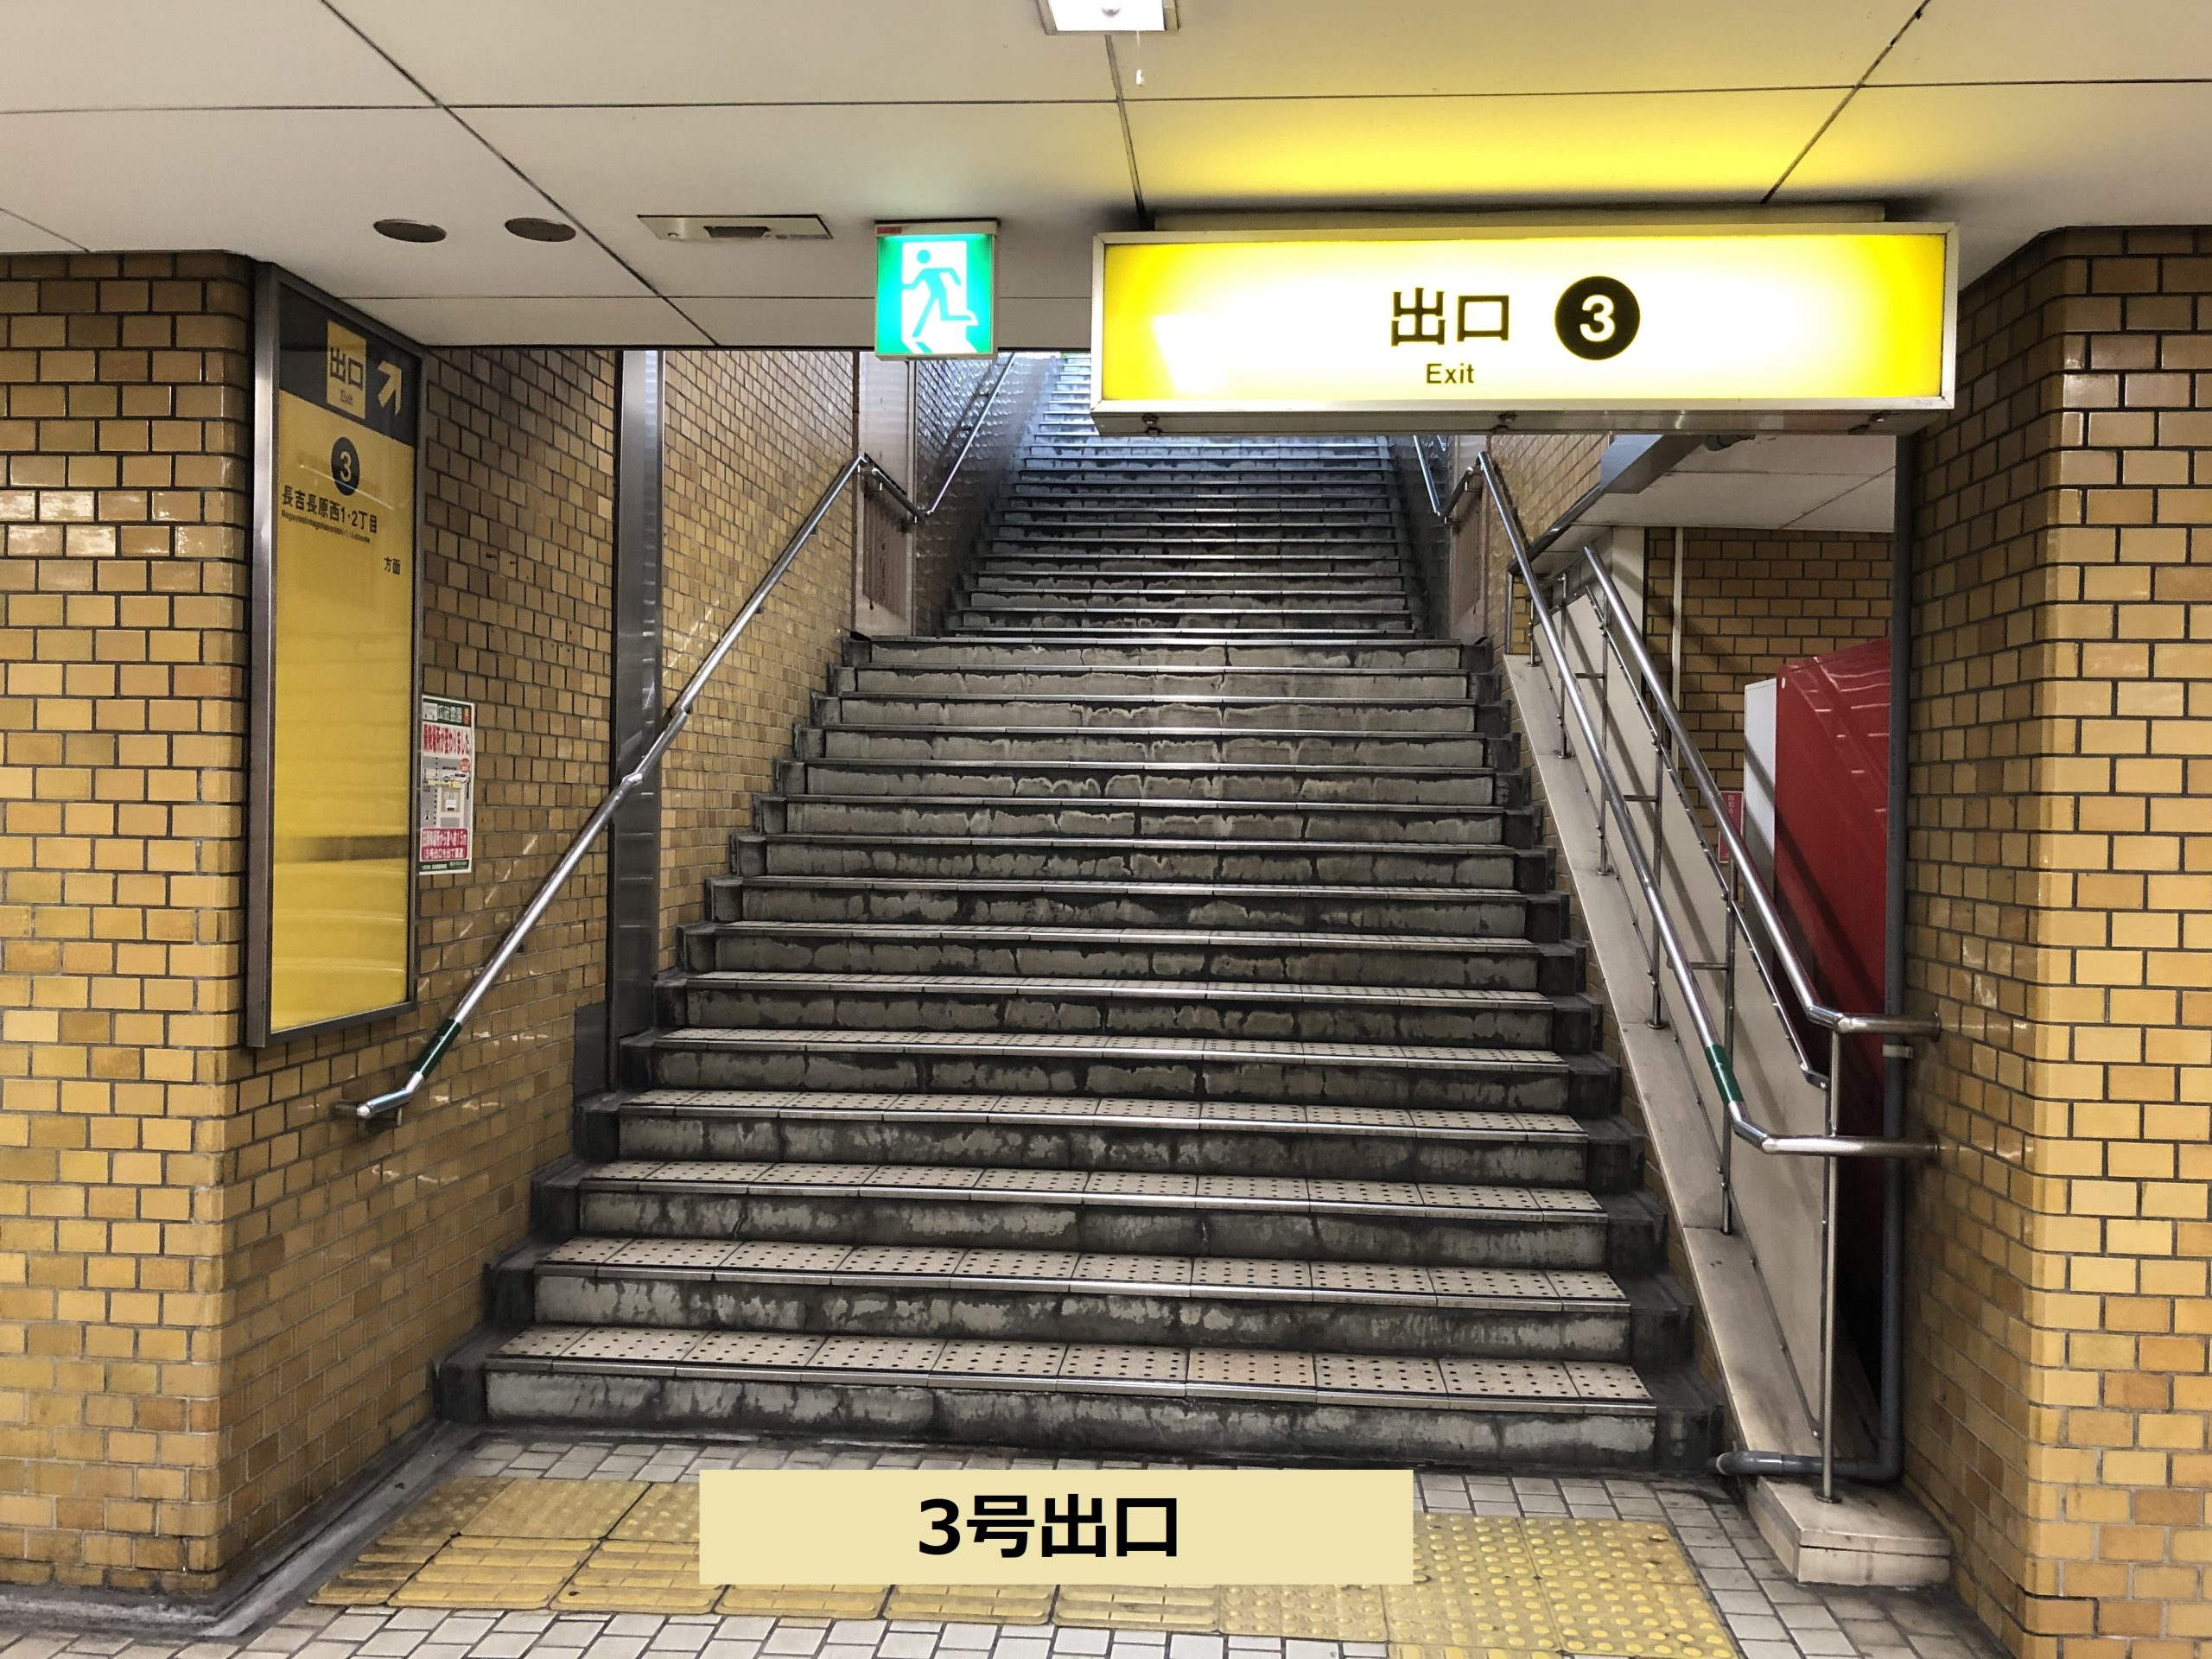 大阪メトロ谷町線「出戸駅」５番出口閉鎖のお知らせ